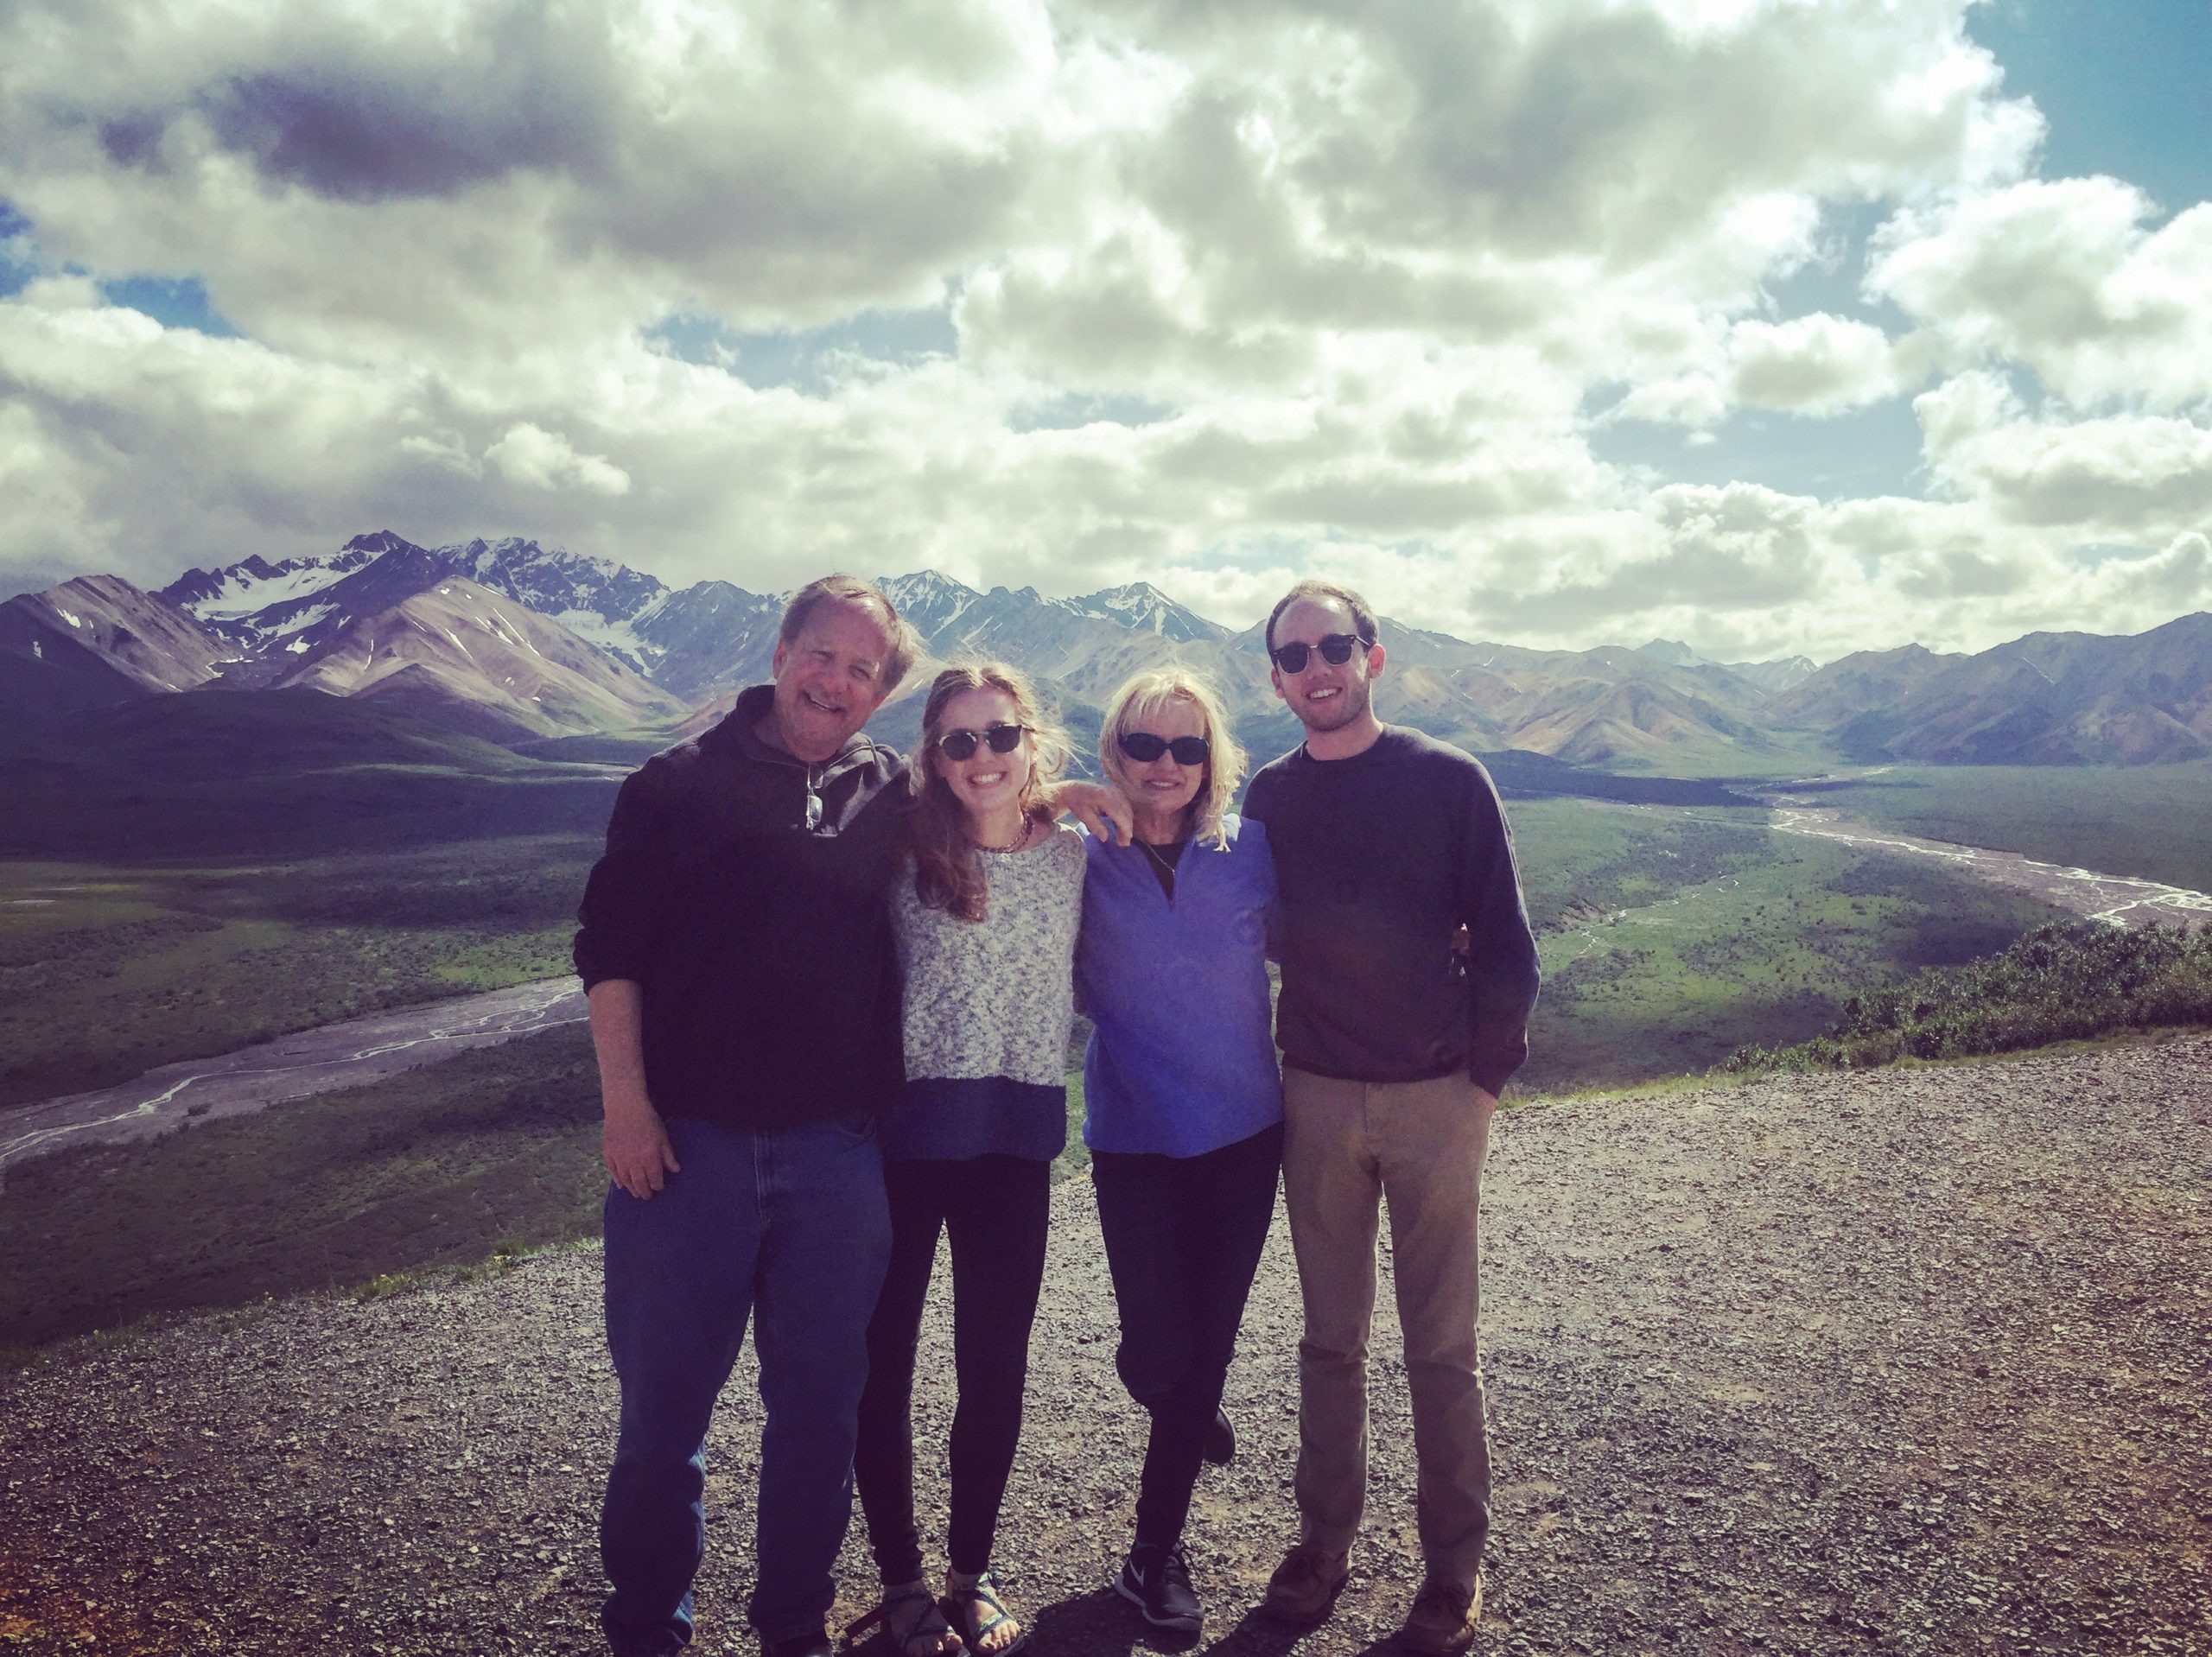 The family at Denali National Park